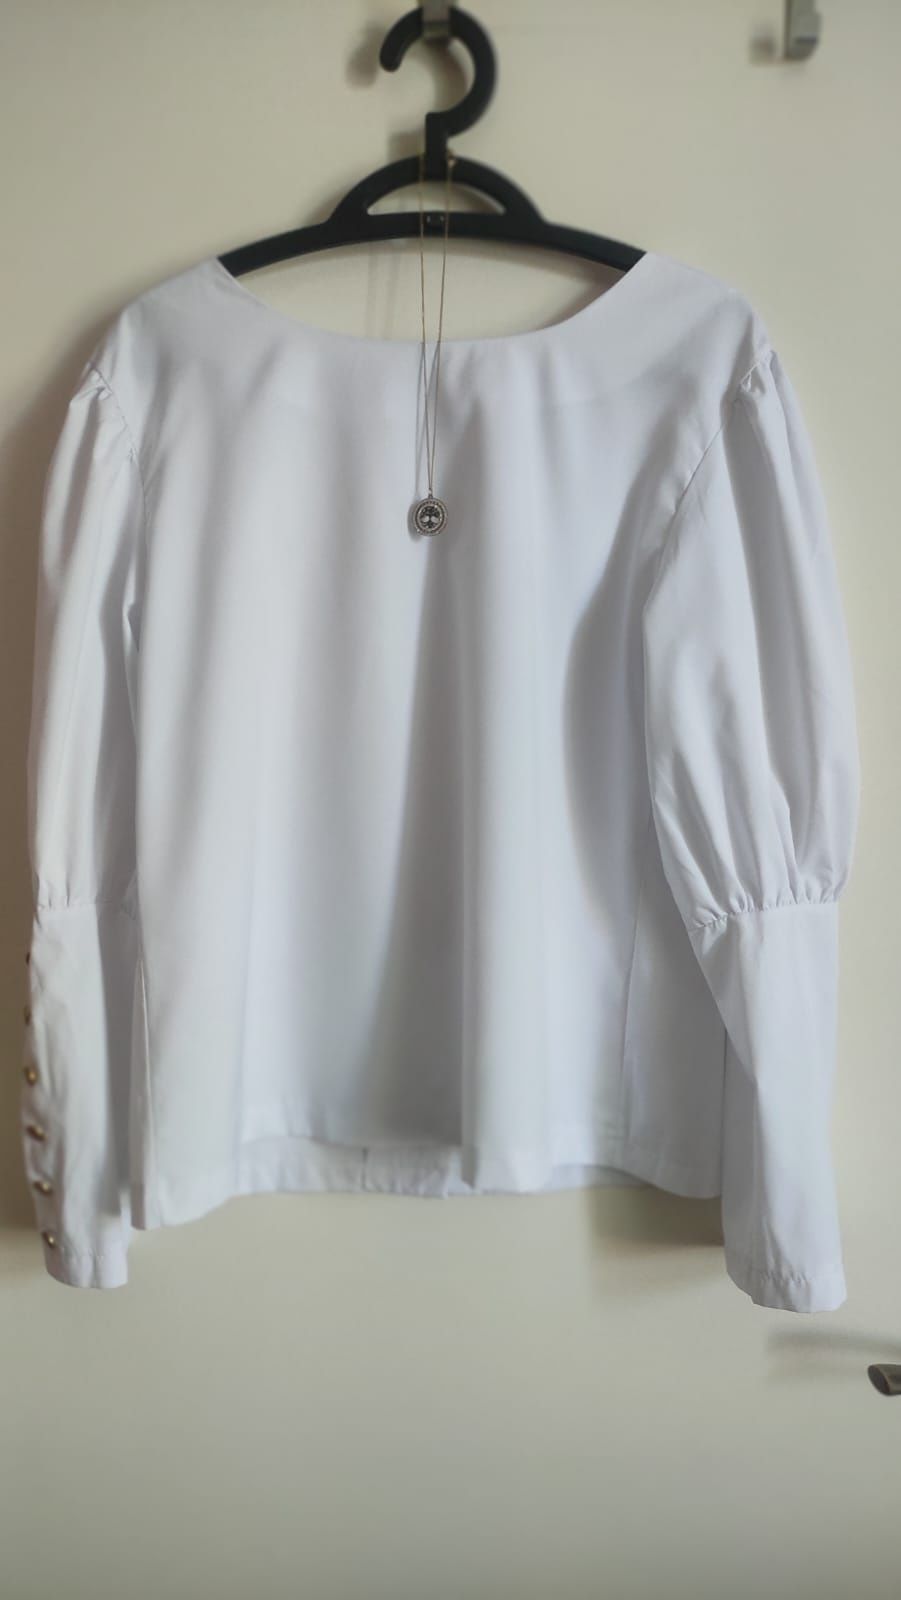 Elegancka biała bluzka/ koszula z efektownymi guzikami roz. XL